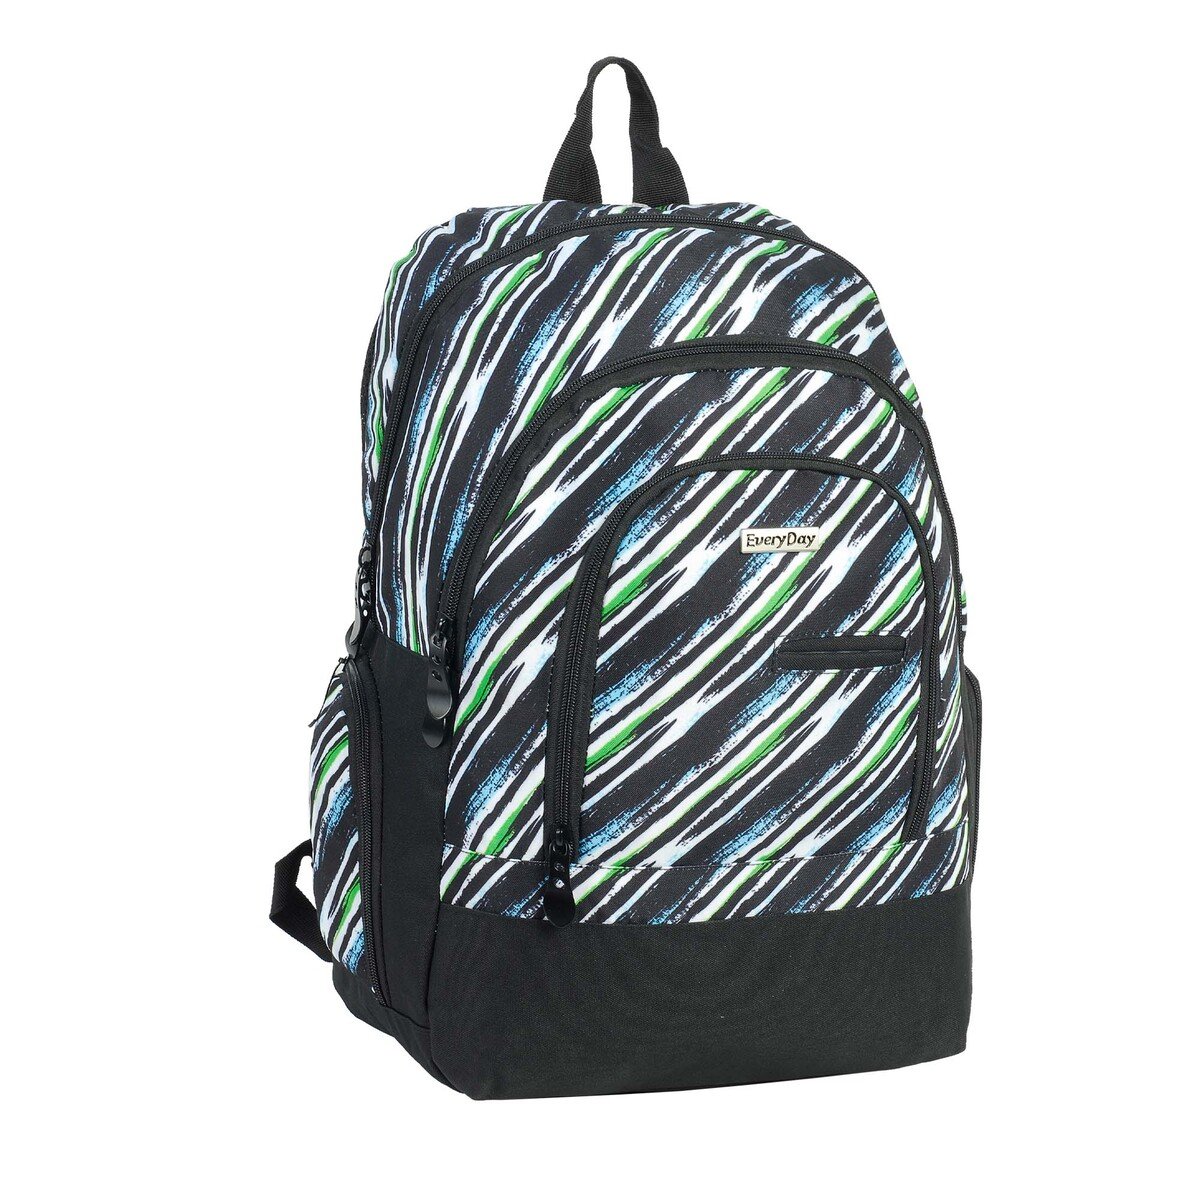 Everyday School Backpack 18" EVD18BP0115